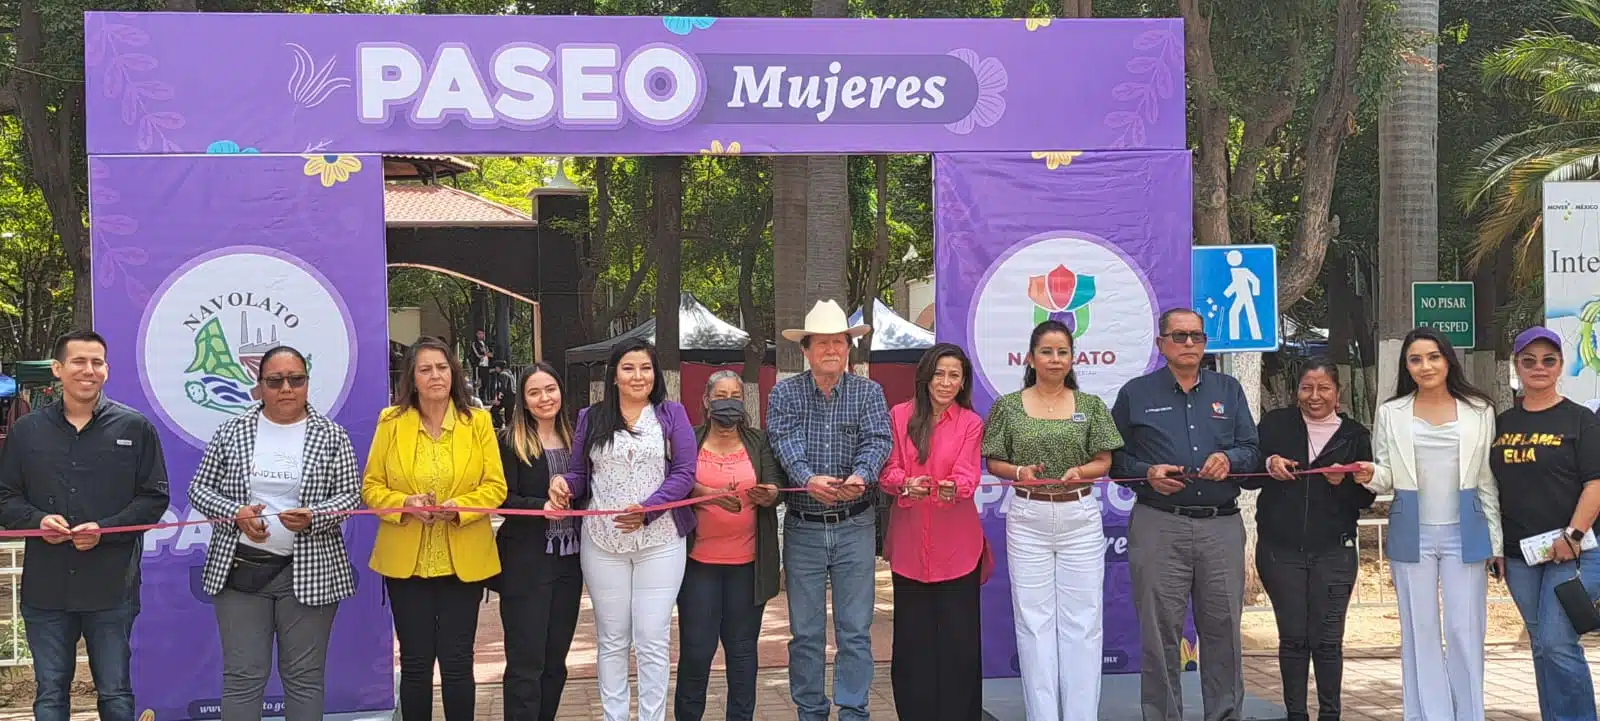 , Francisco Castro López, fue entrevistado durante la inauguración del “Paseo Mujeres”